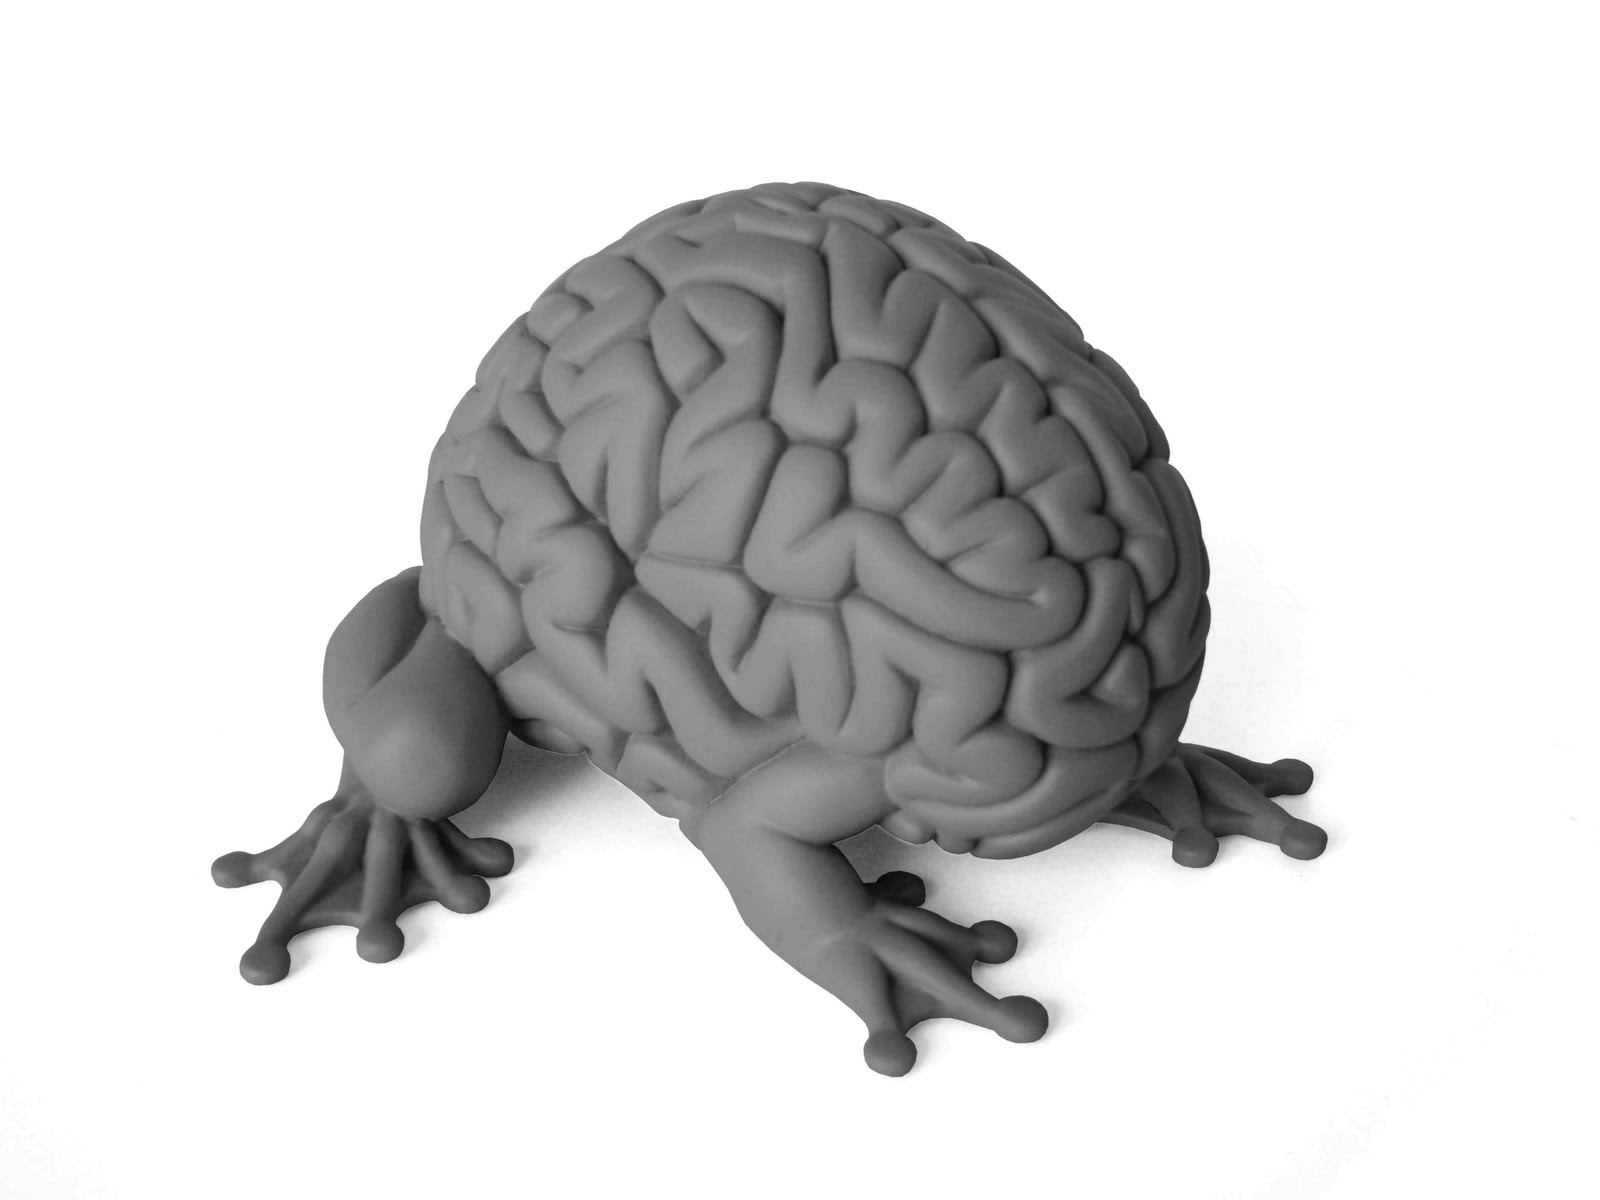 Brain цены. Плюшевый мозг. Игрушечный мозг. Мягкая игрушка мозги. Антистресс мозг.